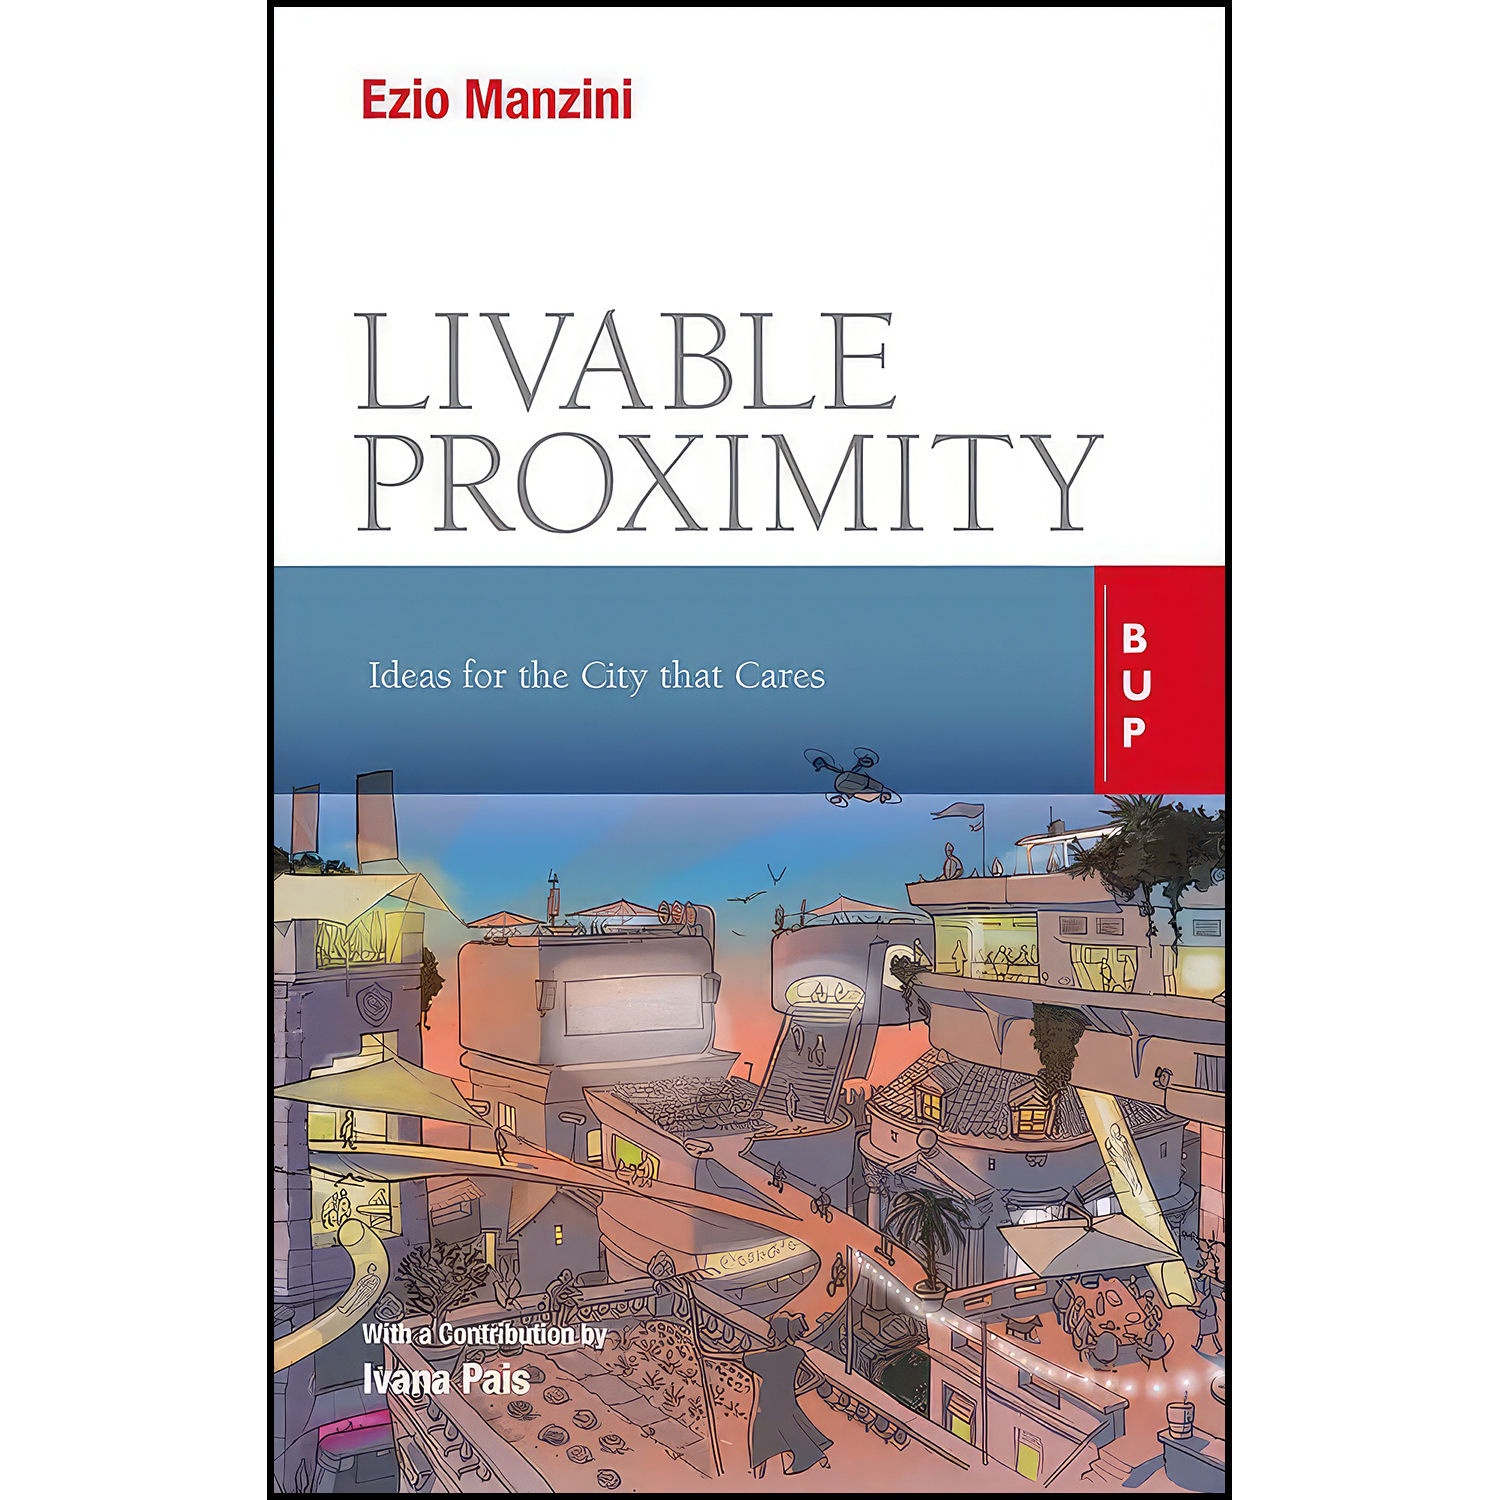 کتاب Livable Proximity اثر Ezio Manzini MA انتشارات EGEA Spa - Bocconi University Press